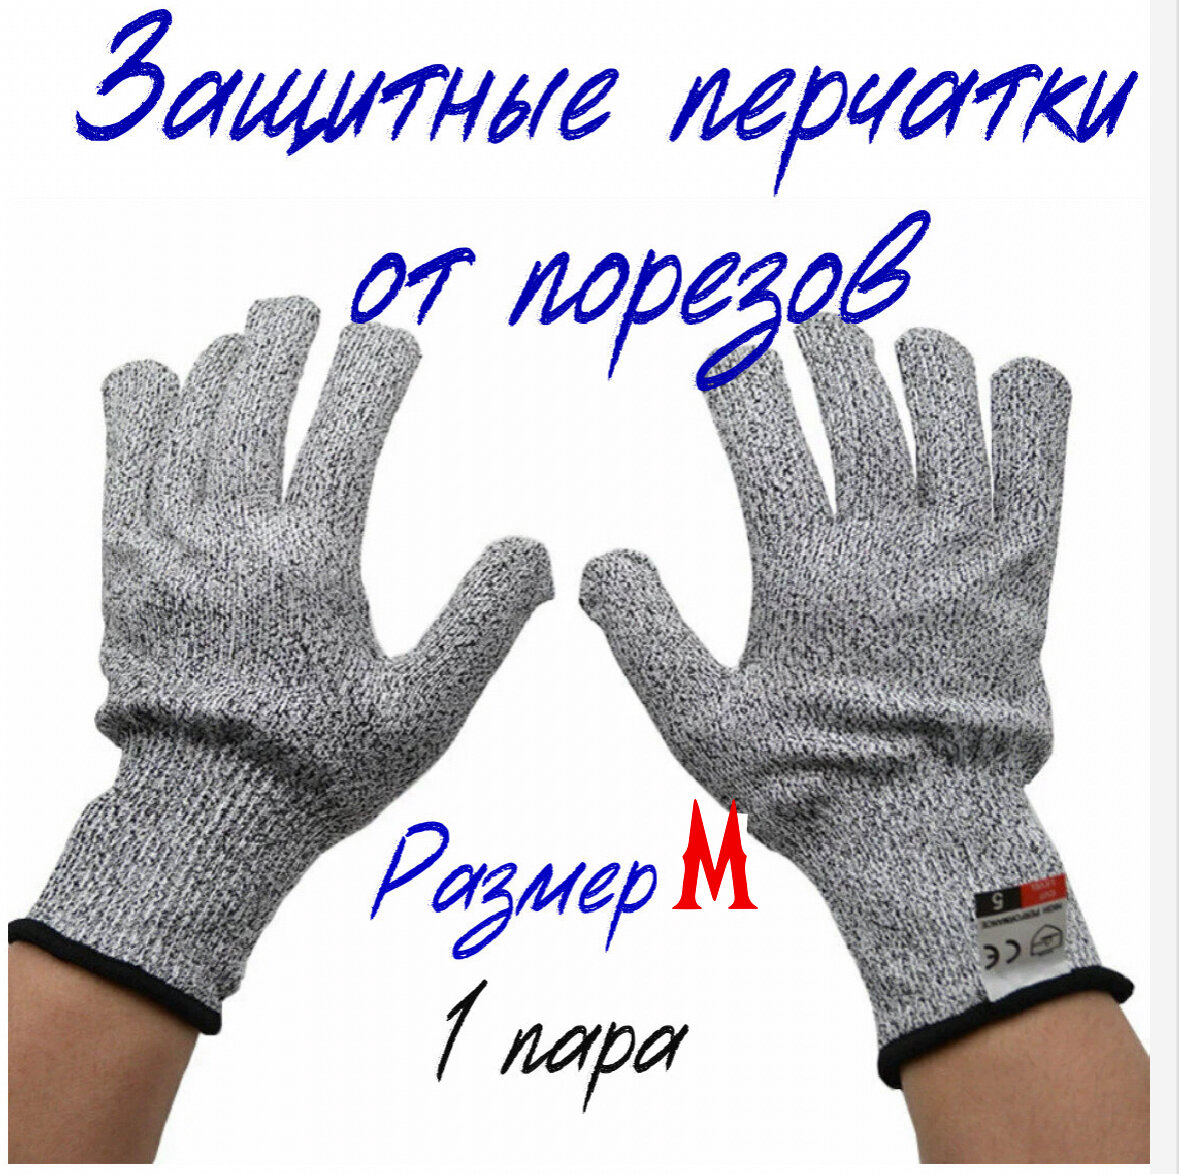 Кевларовые перчатки для защиты рук от порезов, размер М -1 пара